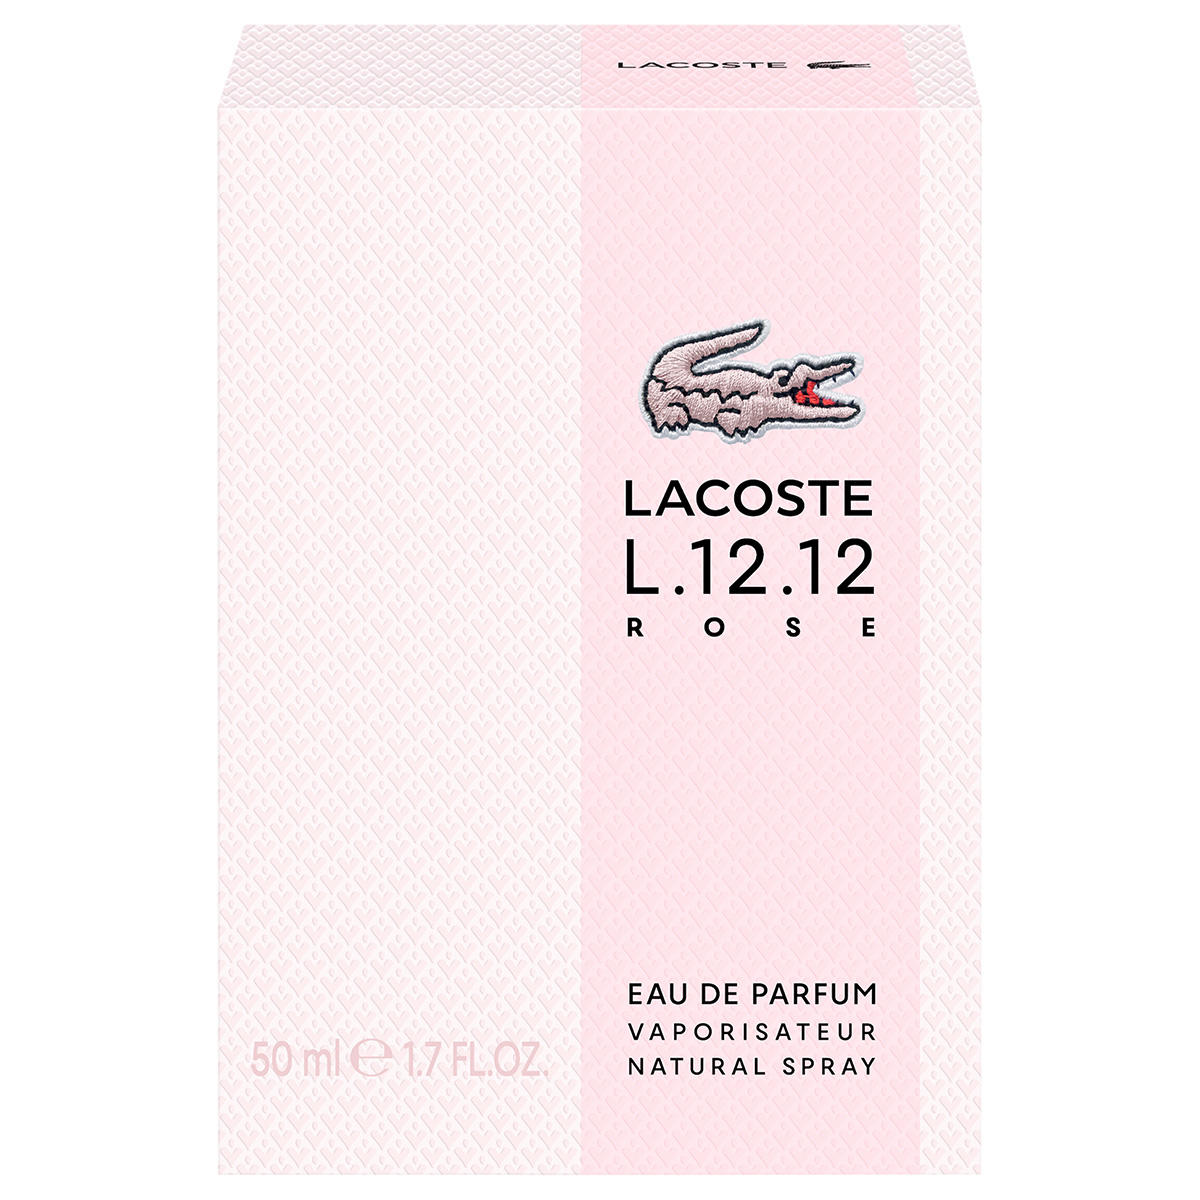 Lacoste L.12.12 Rose Eau de Parfum 50 ml - 3